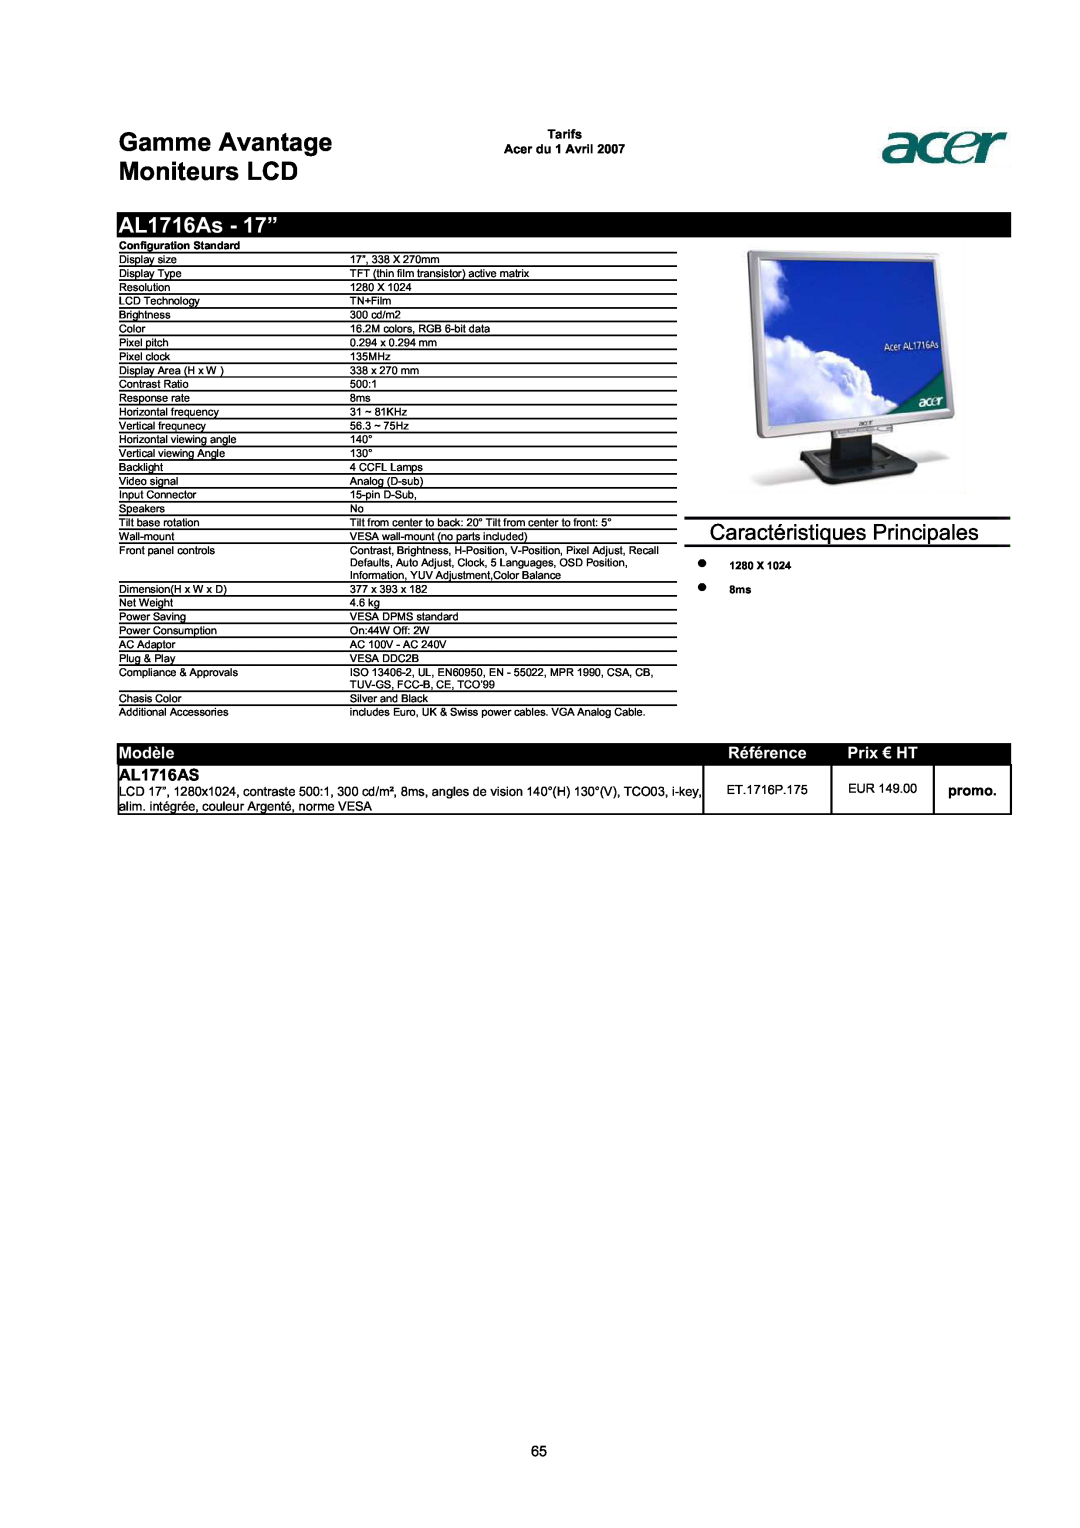 Acer AC713B-17 AL1716As - 17”, AL1716AS, Gamme Avantage Moniteurs LCD, Caractéristiques Principales, Modèle, Référence 